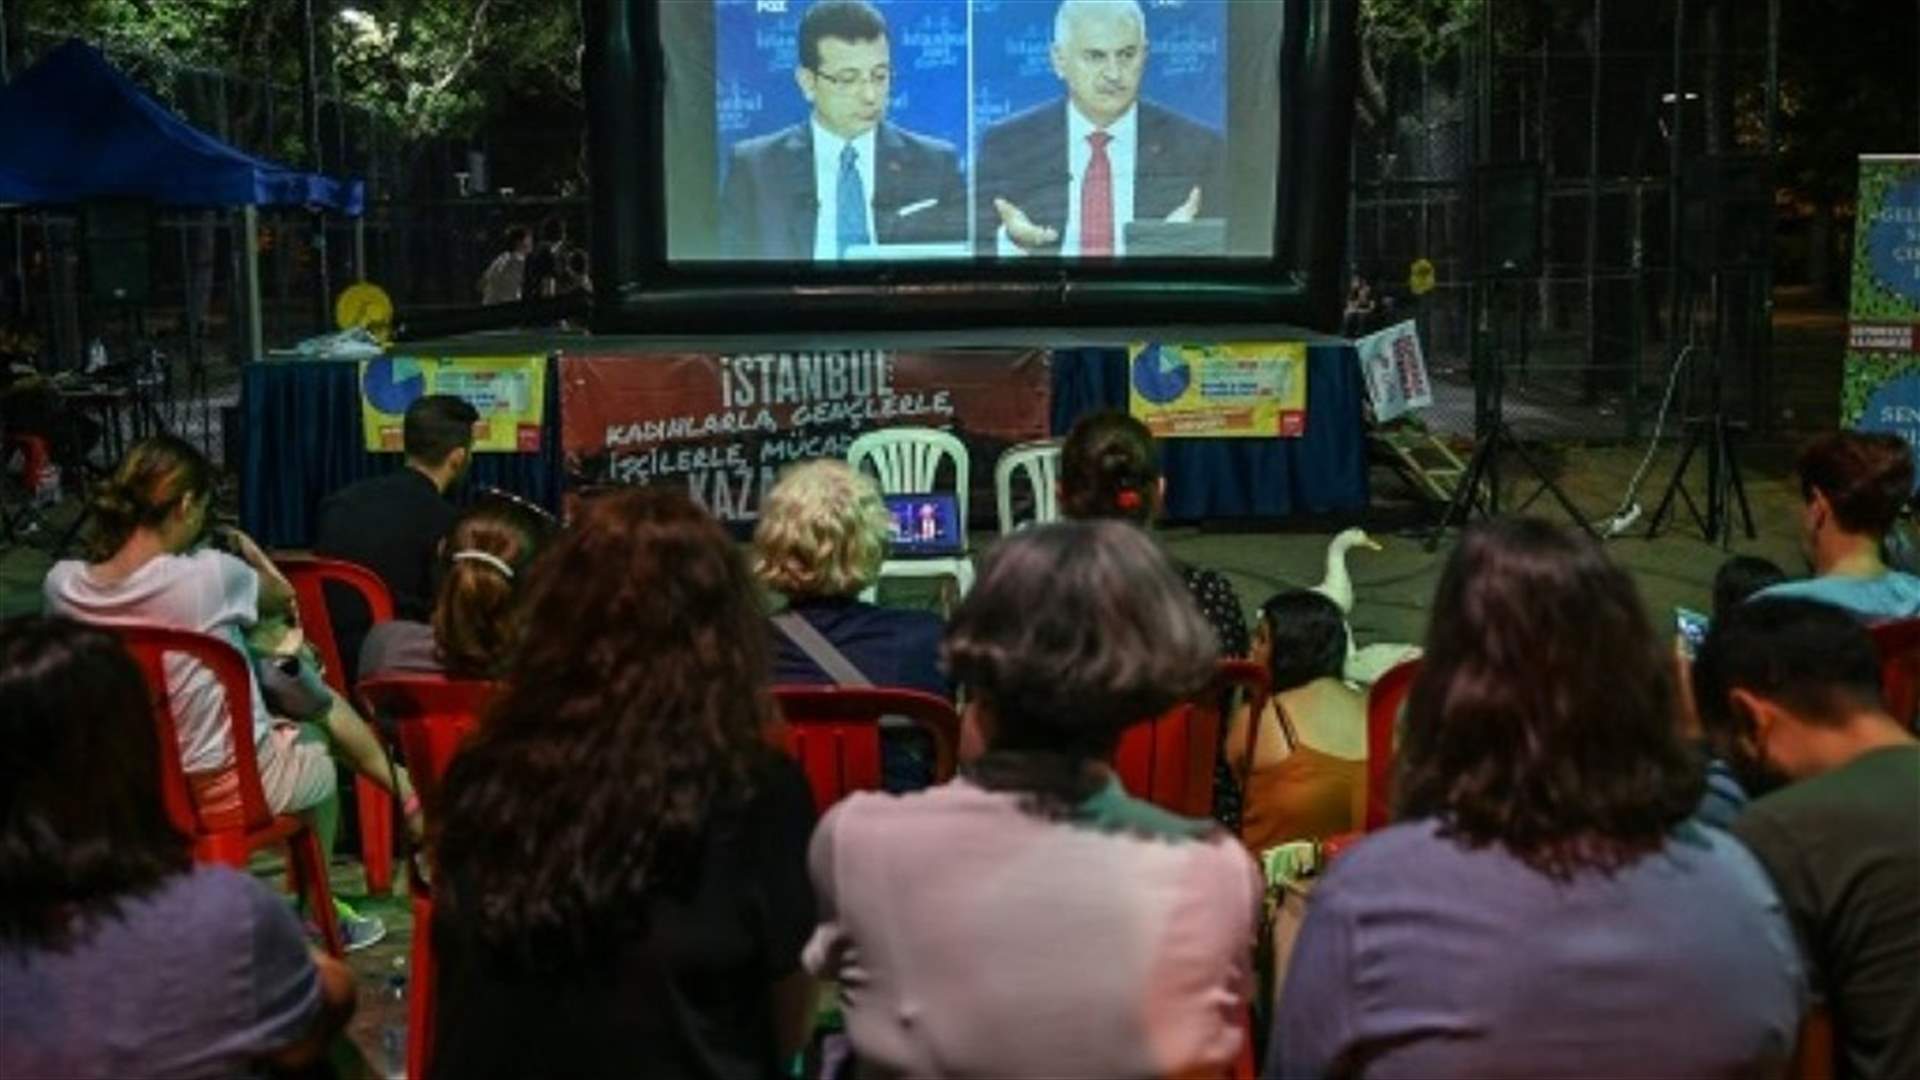 انتخابات بلدية اسطنبول تشهد أول مناظرة تلفزيونية بين المرشحين منذ عام 2002